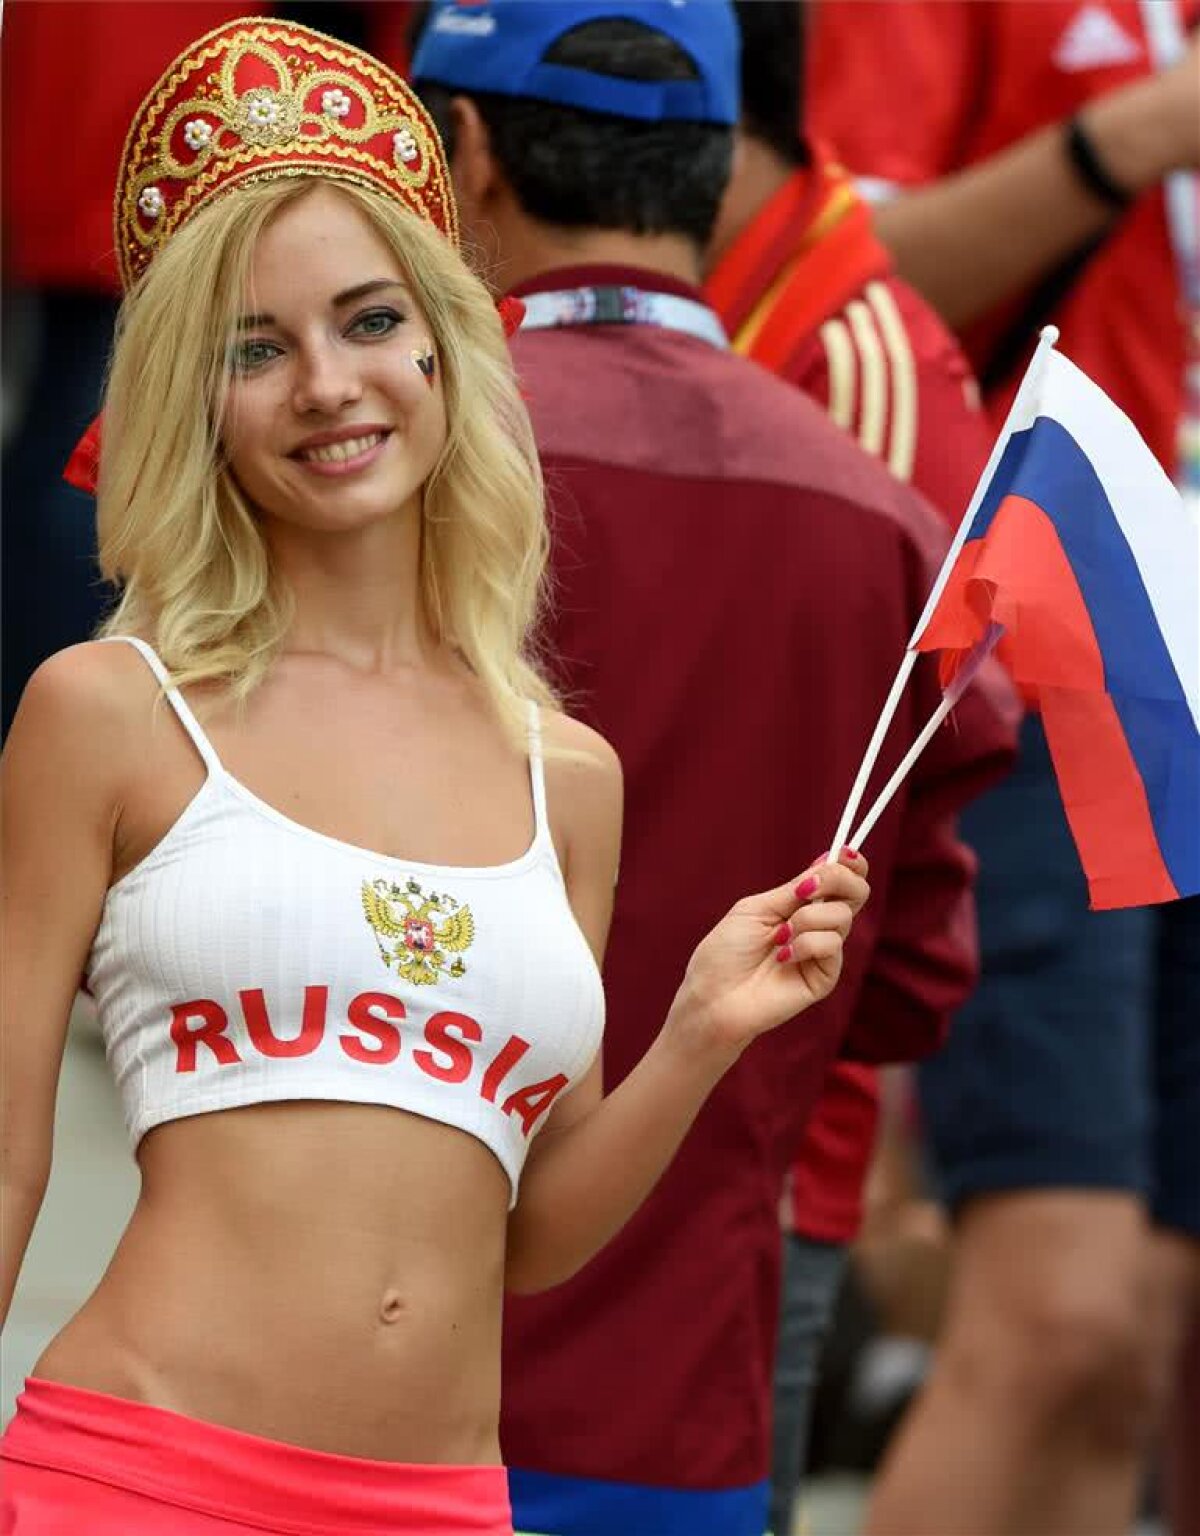 FOTO Ospitalitate de 5 stele » Imagini incendiare cu cea mai sexy rusoaică de la meciurile CM 2018